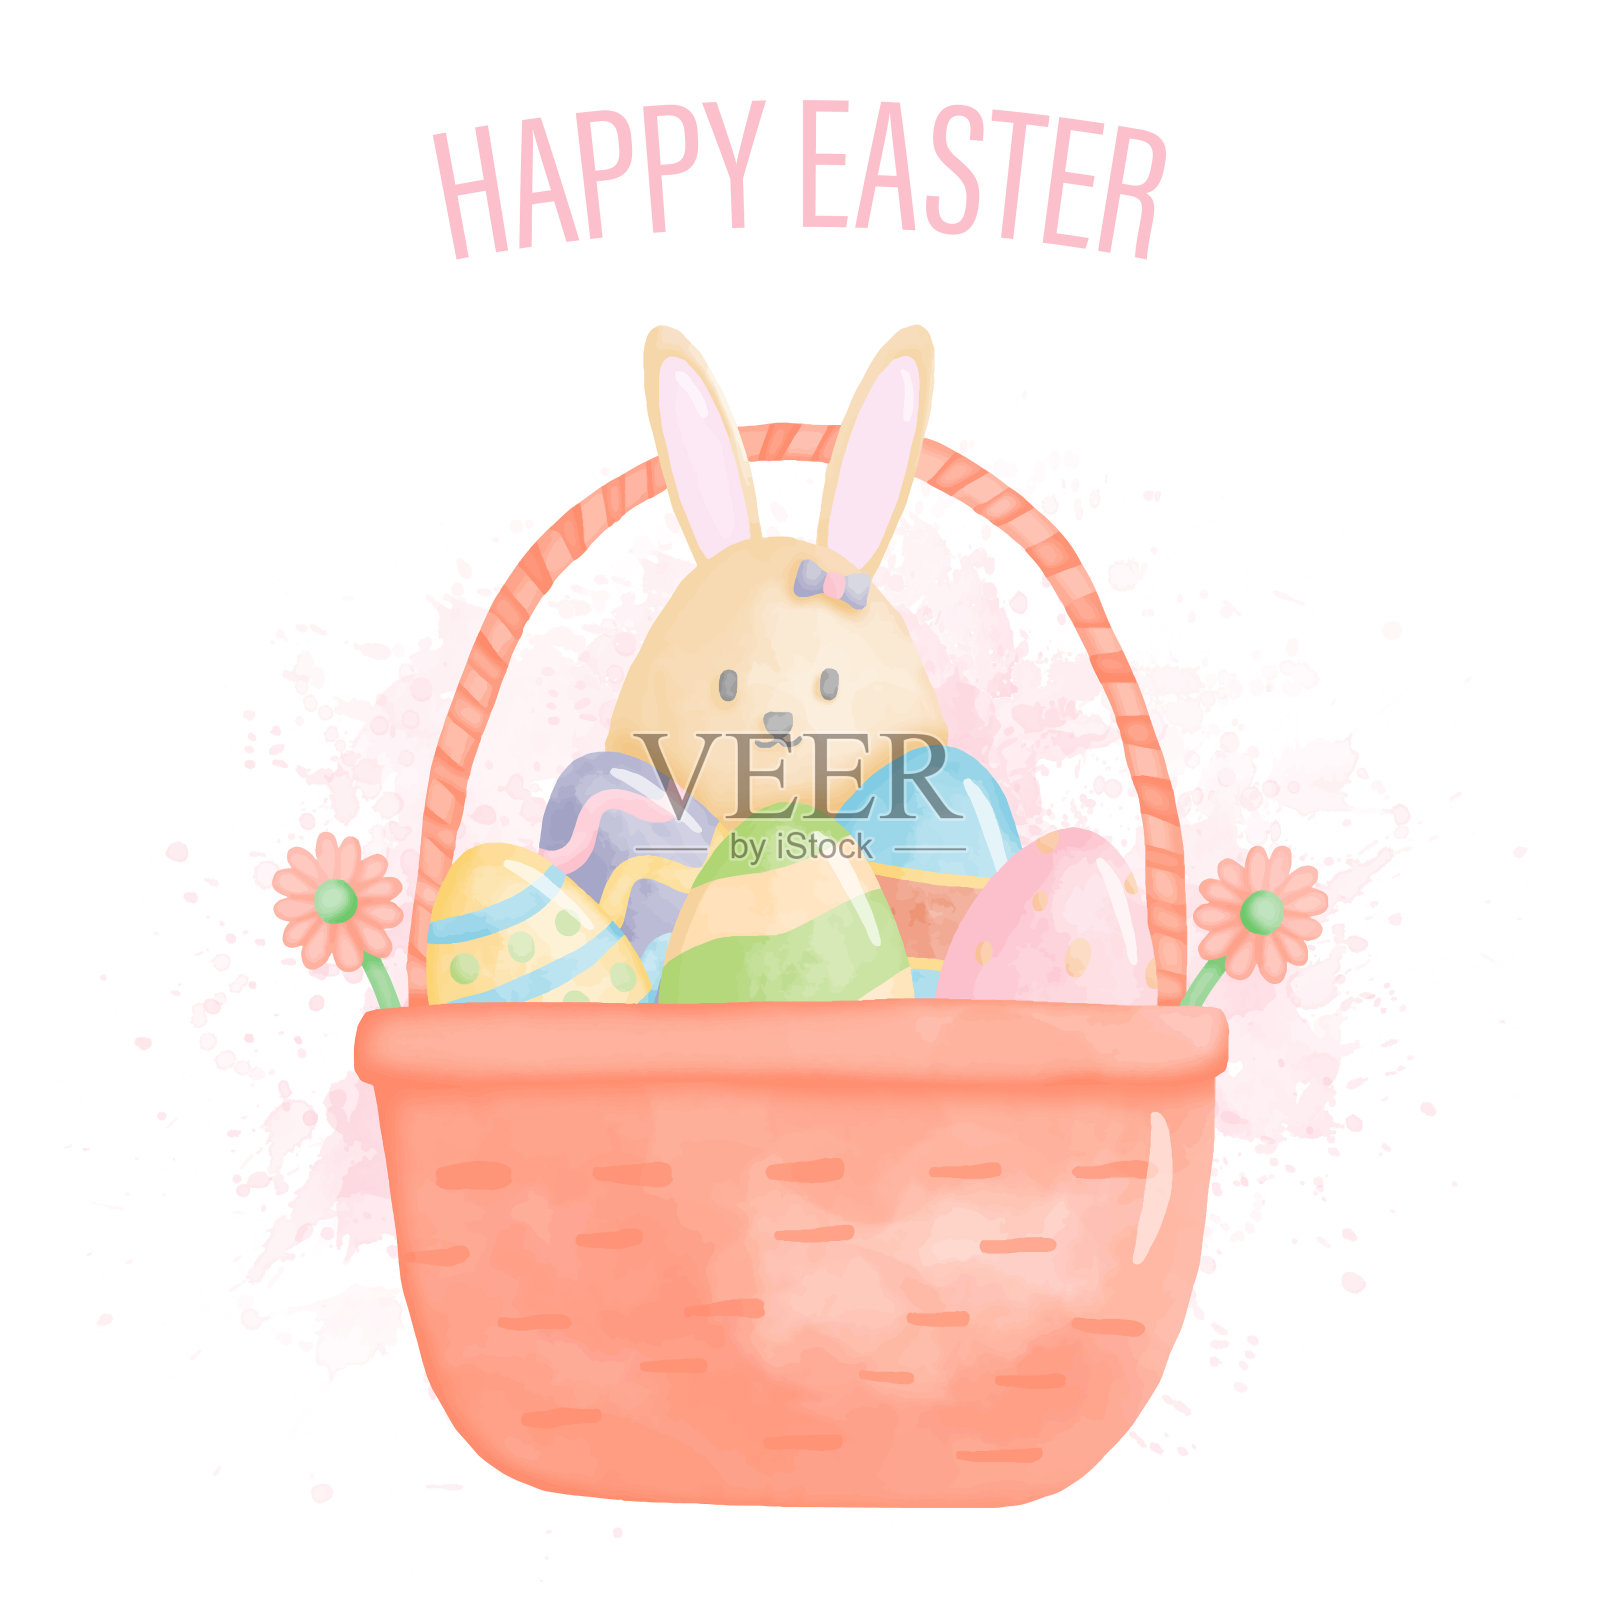 水彩画复活节快乐的兔子和复活节彩蛋在篮子里插画图片素材